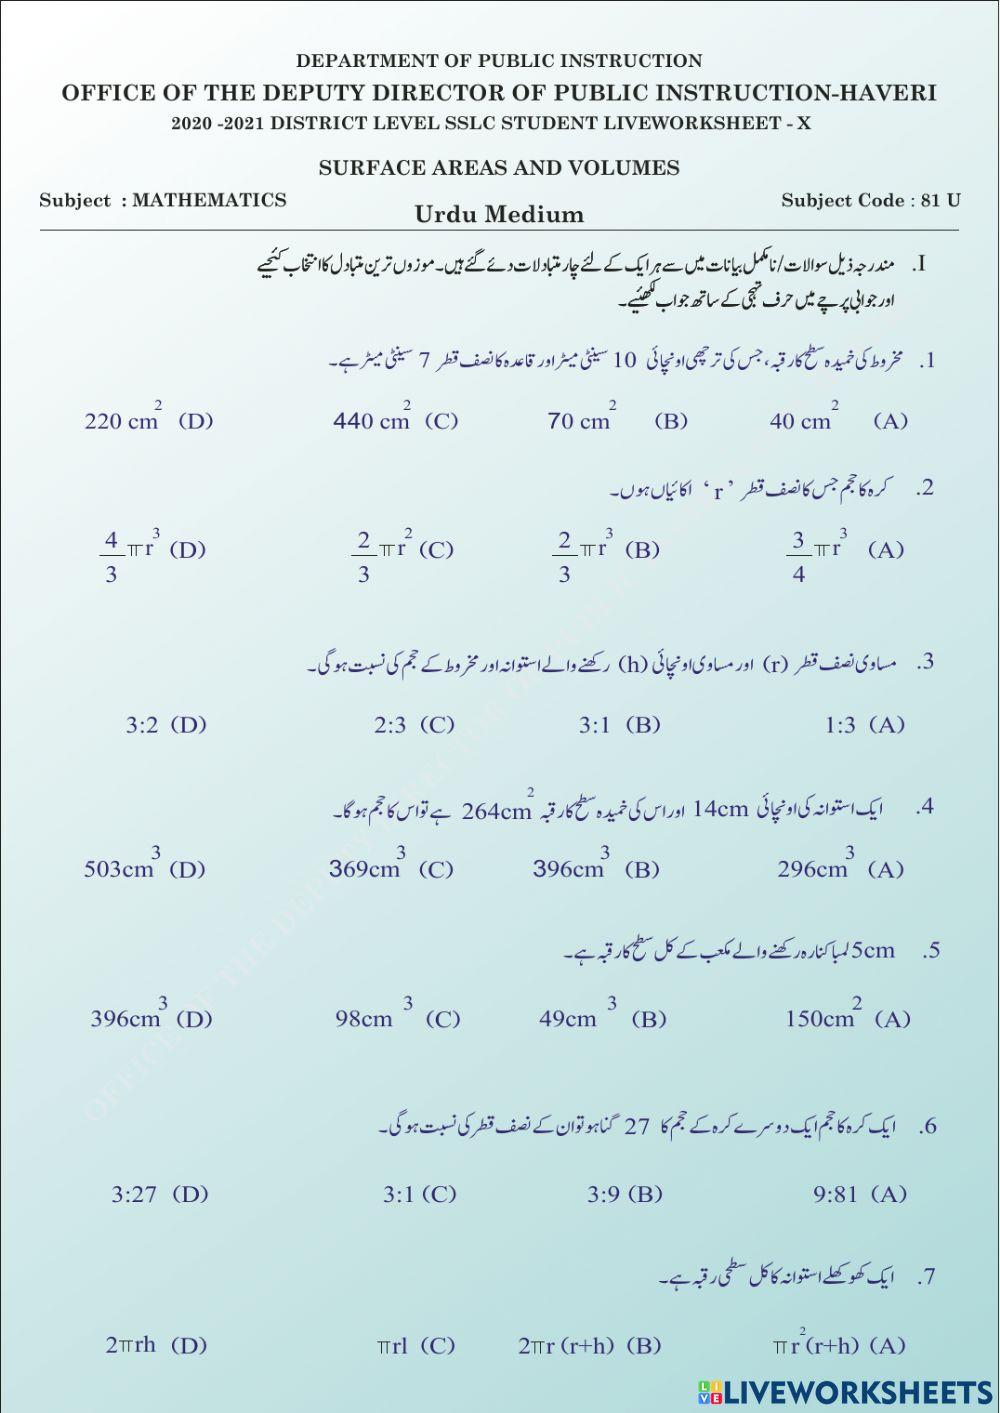 Surface area and volumes (urdu medium)